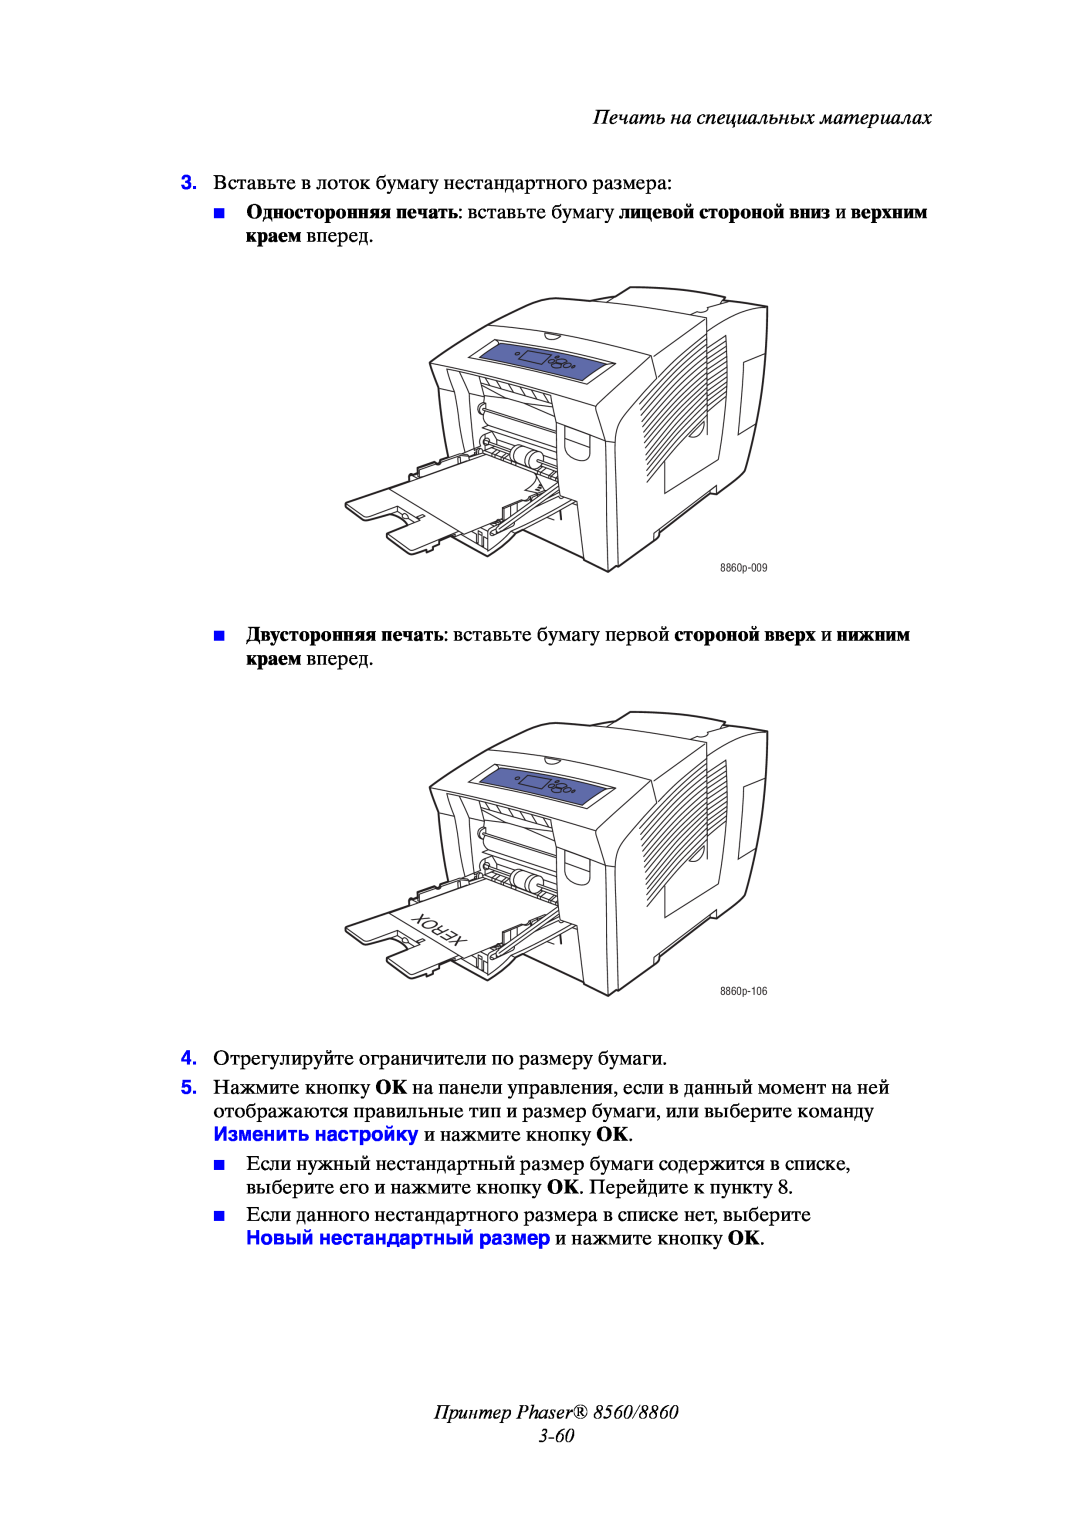 Xerox Новый нестандартный размер и нажмите кнопку OK, Принтер Phaser 8560/8860 3-60, Печать на специальных материалах 